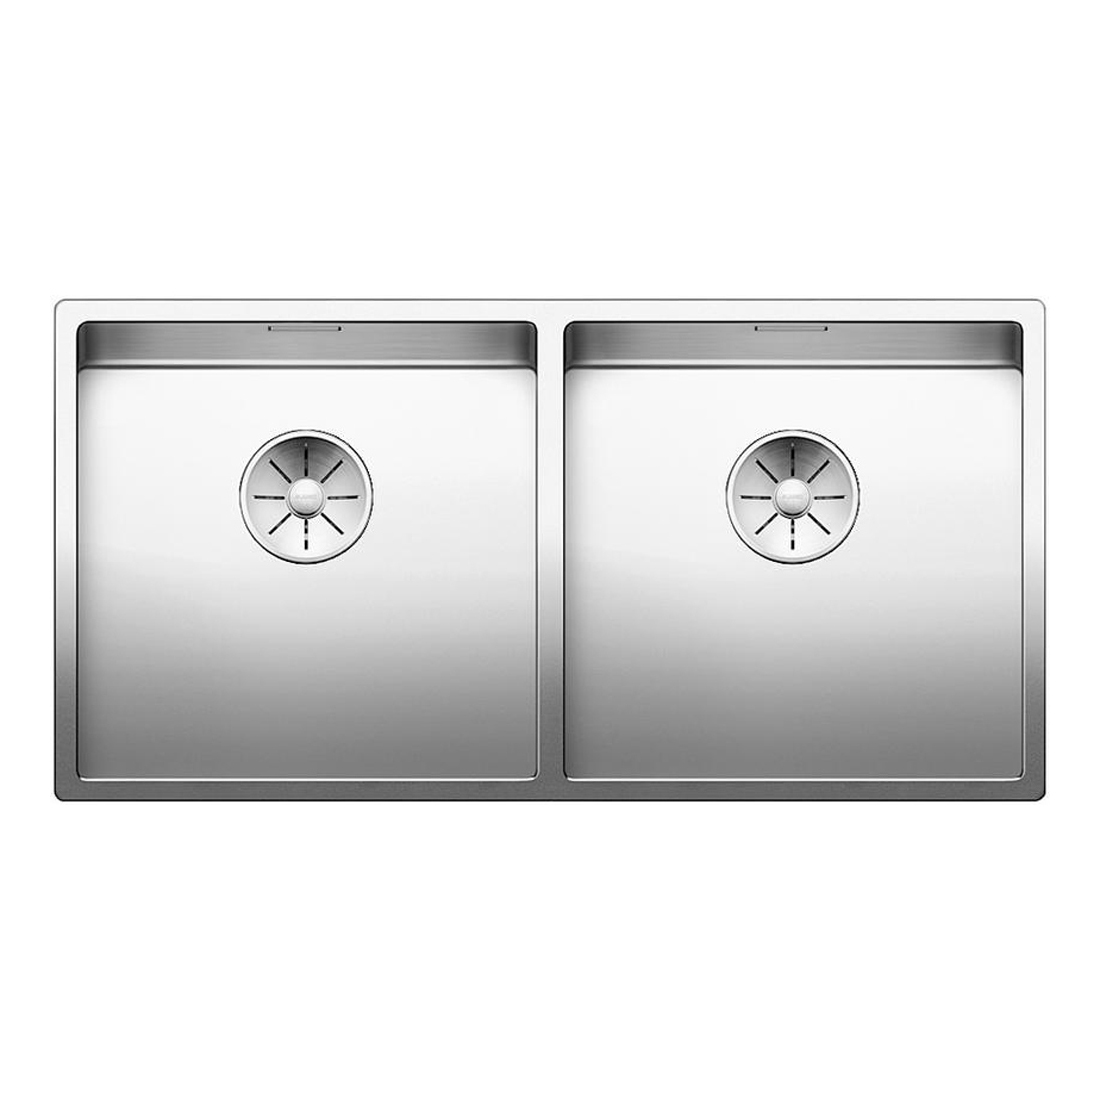 Кухонная мойка Blanco Claron 400/400-IF зеркальная полировка кухонная мойка blanco axis iii 6s if правая зеркальная полировка